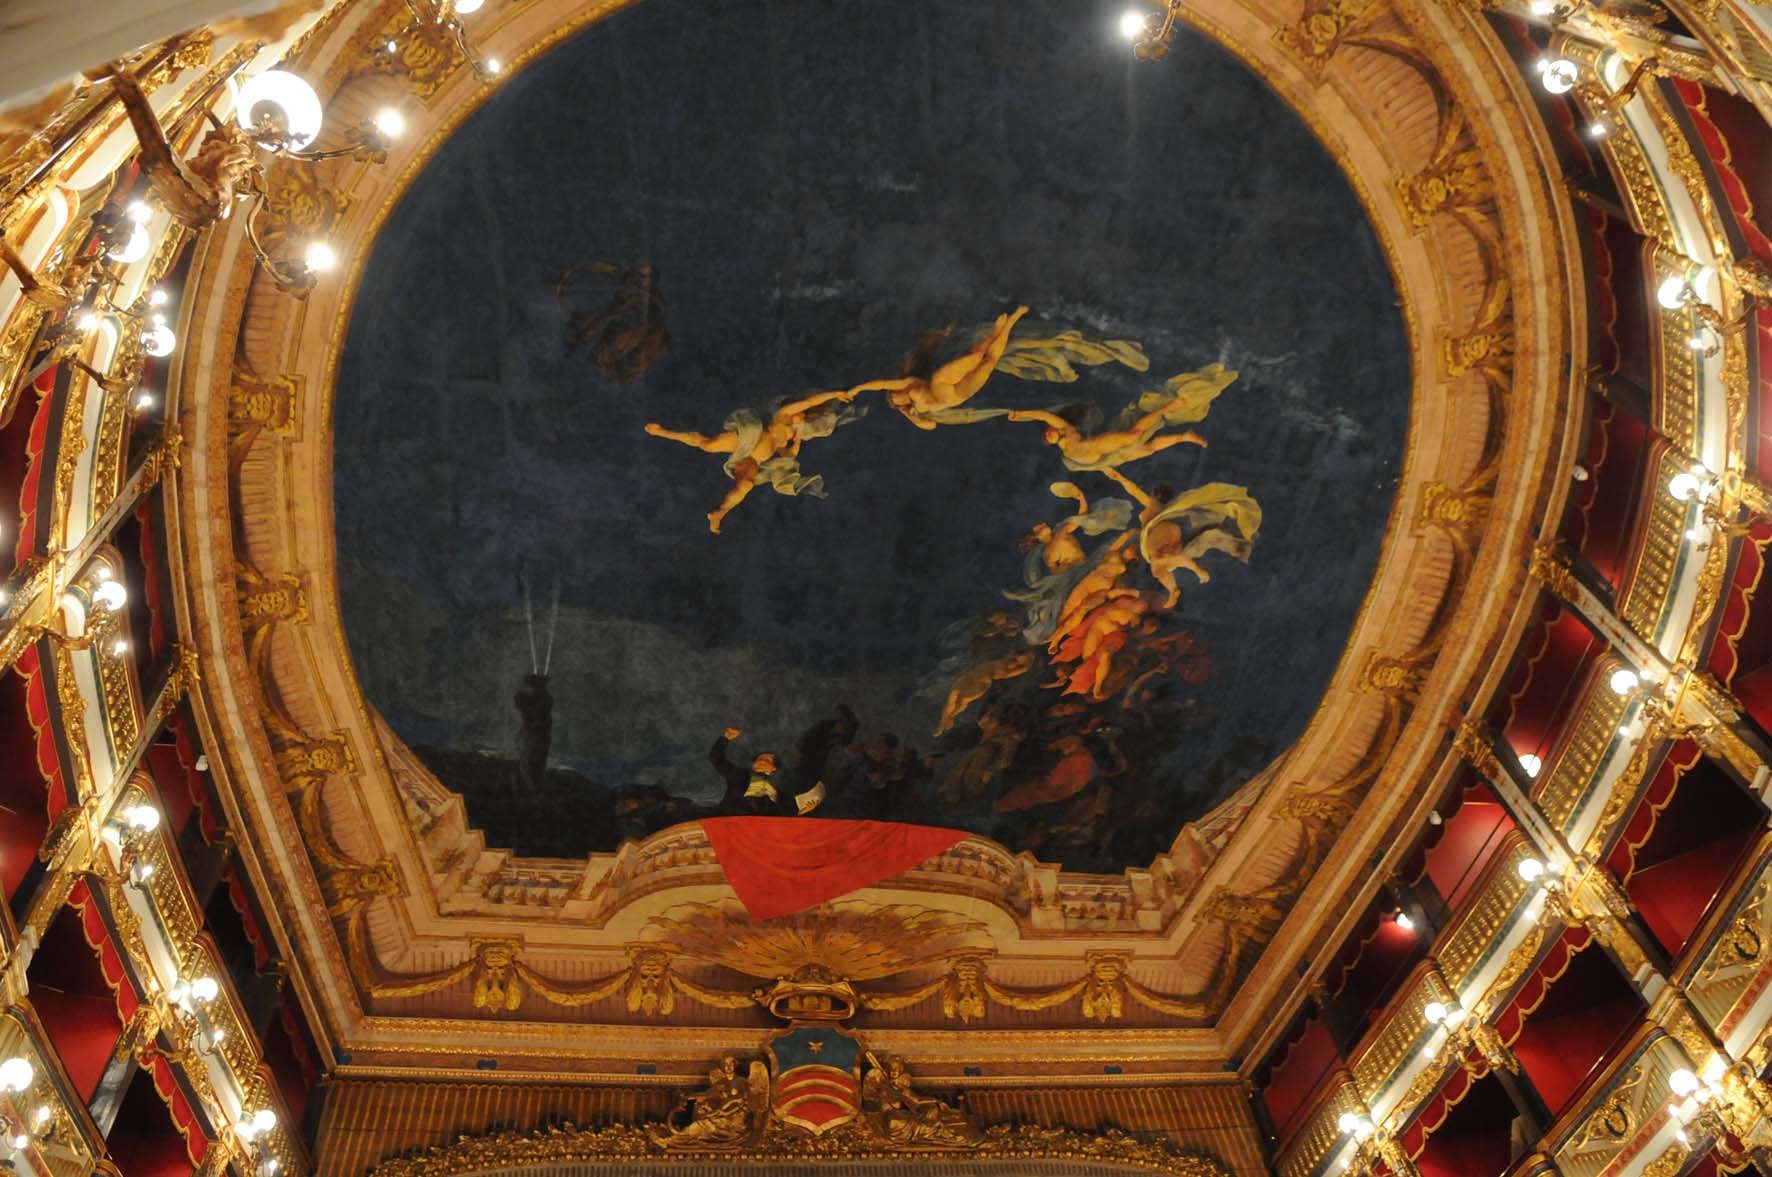 Giuseppe Verdi Színház